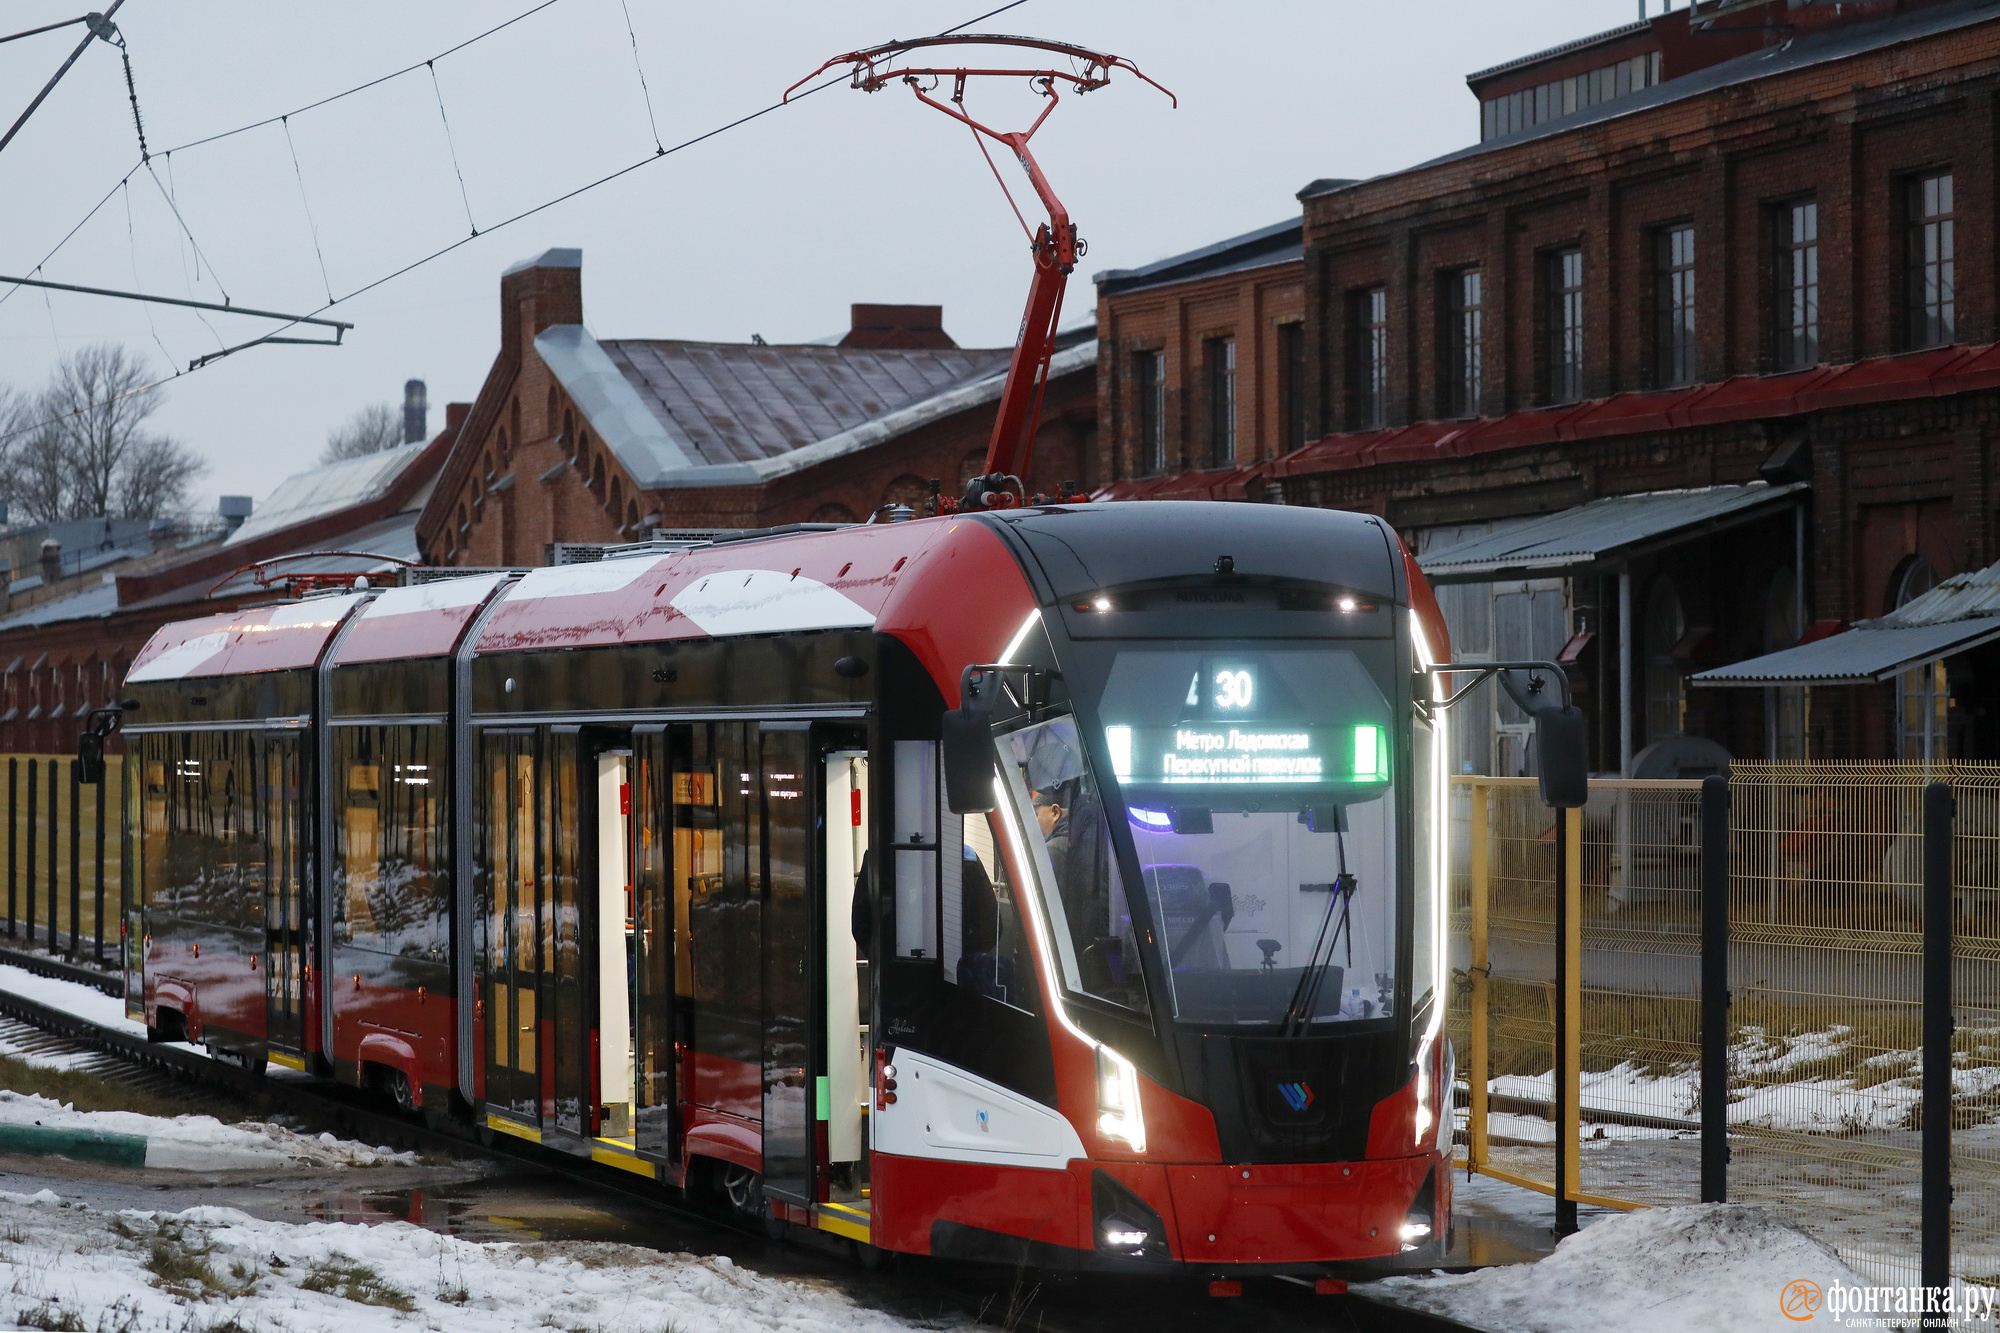 Стало известно, какие трамваи будут ходить по новой линии из Купчино в Славянку. Вы их уже видели